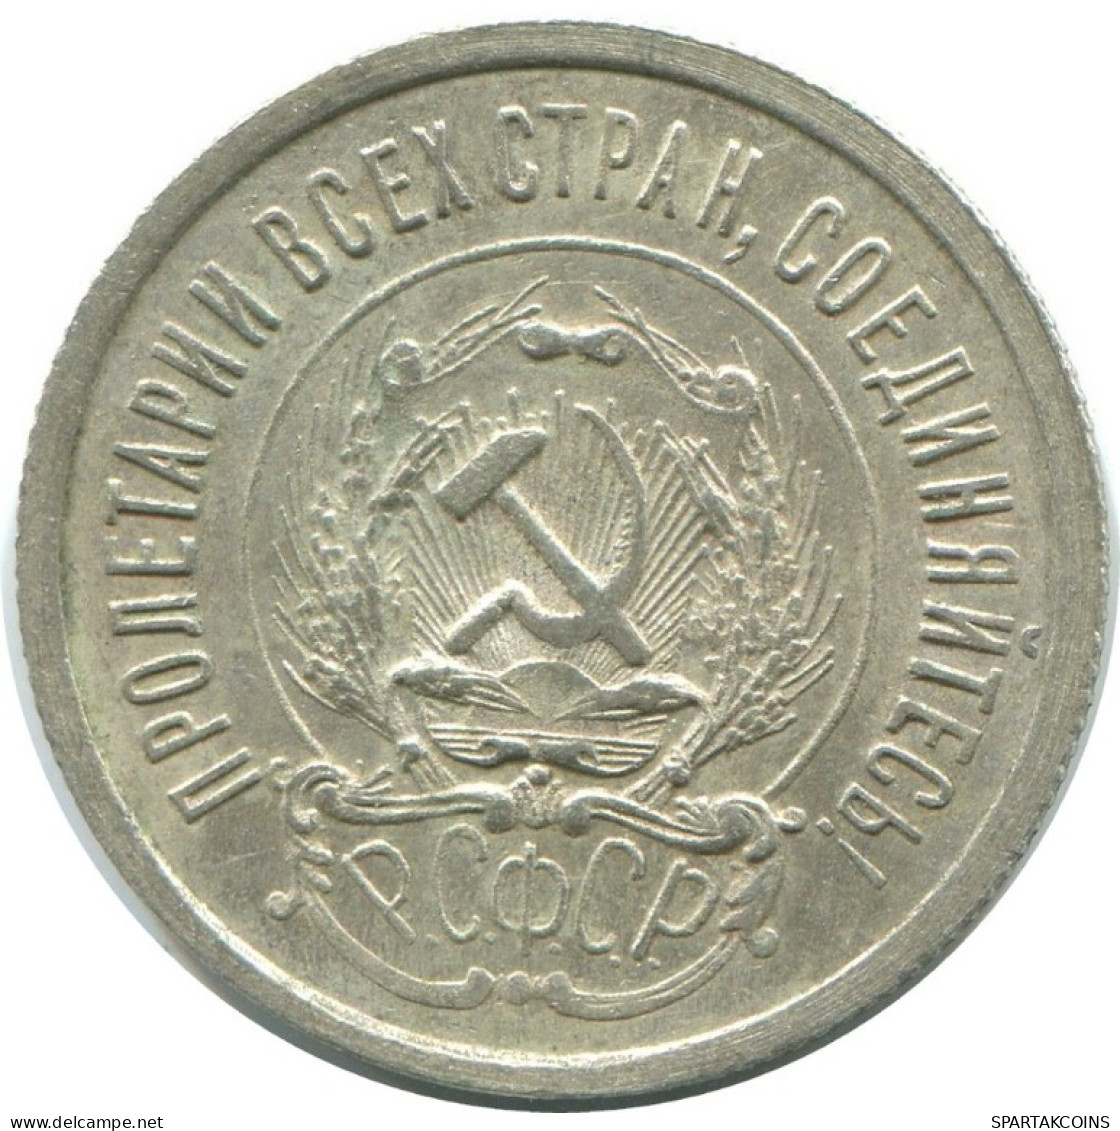 20 KOPEKS 1923 RUSSIA RSFSR SILVER Coin HIGH GRADE #AF612.U.A - Rusland